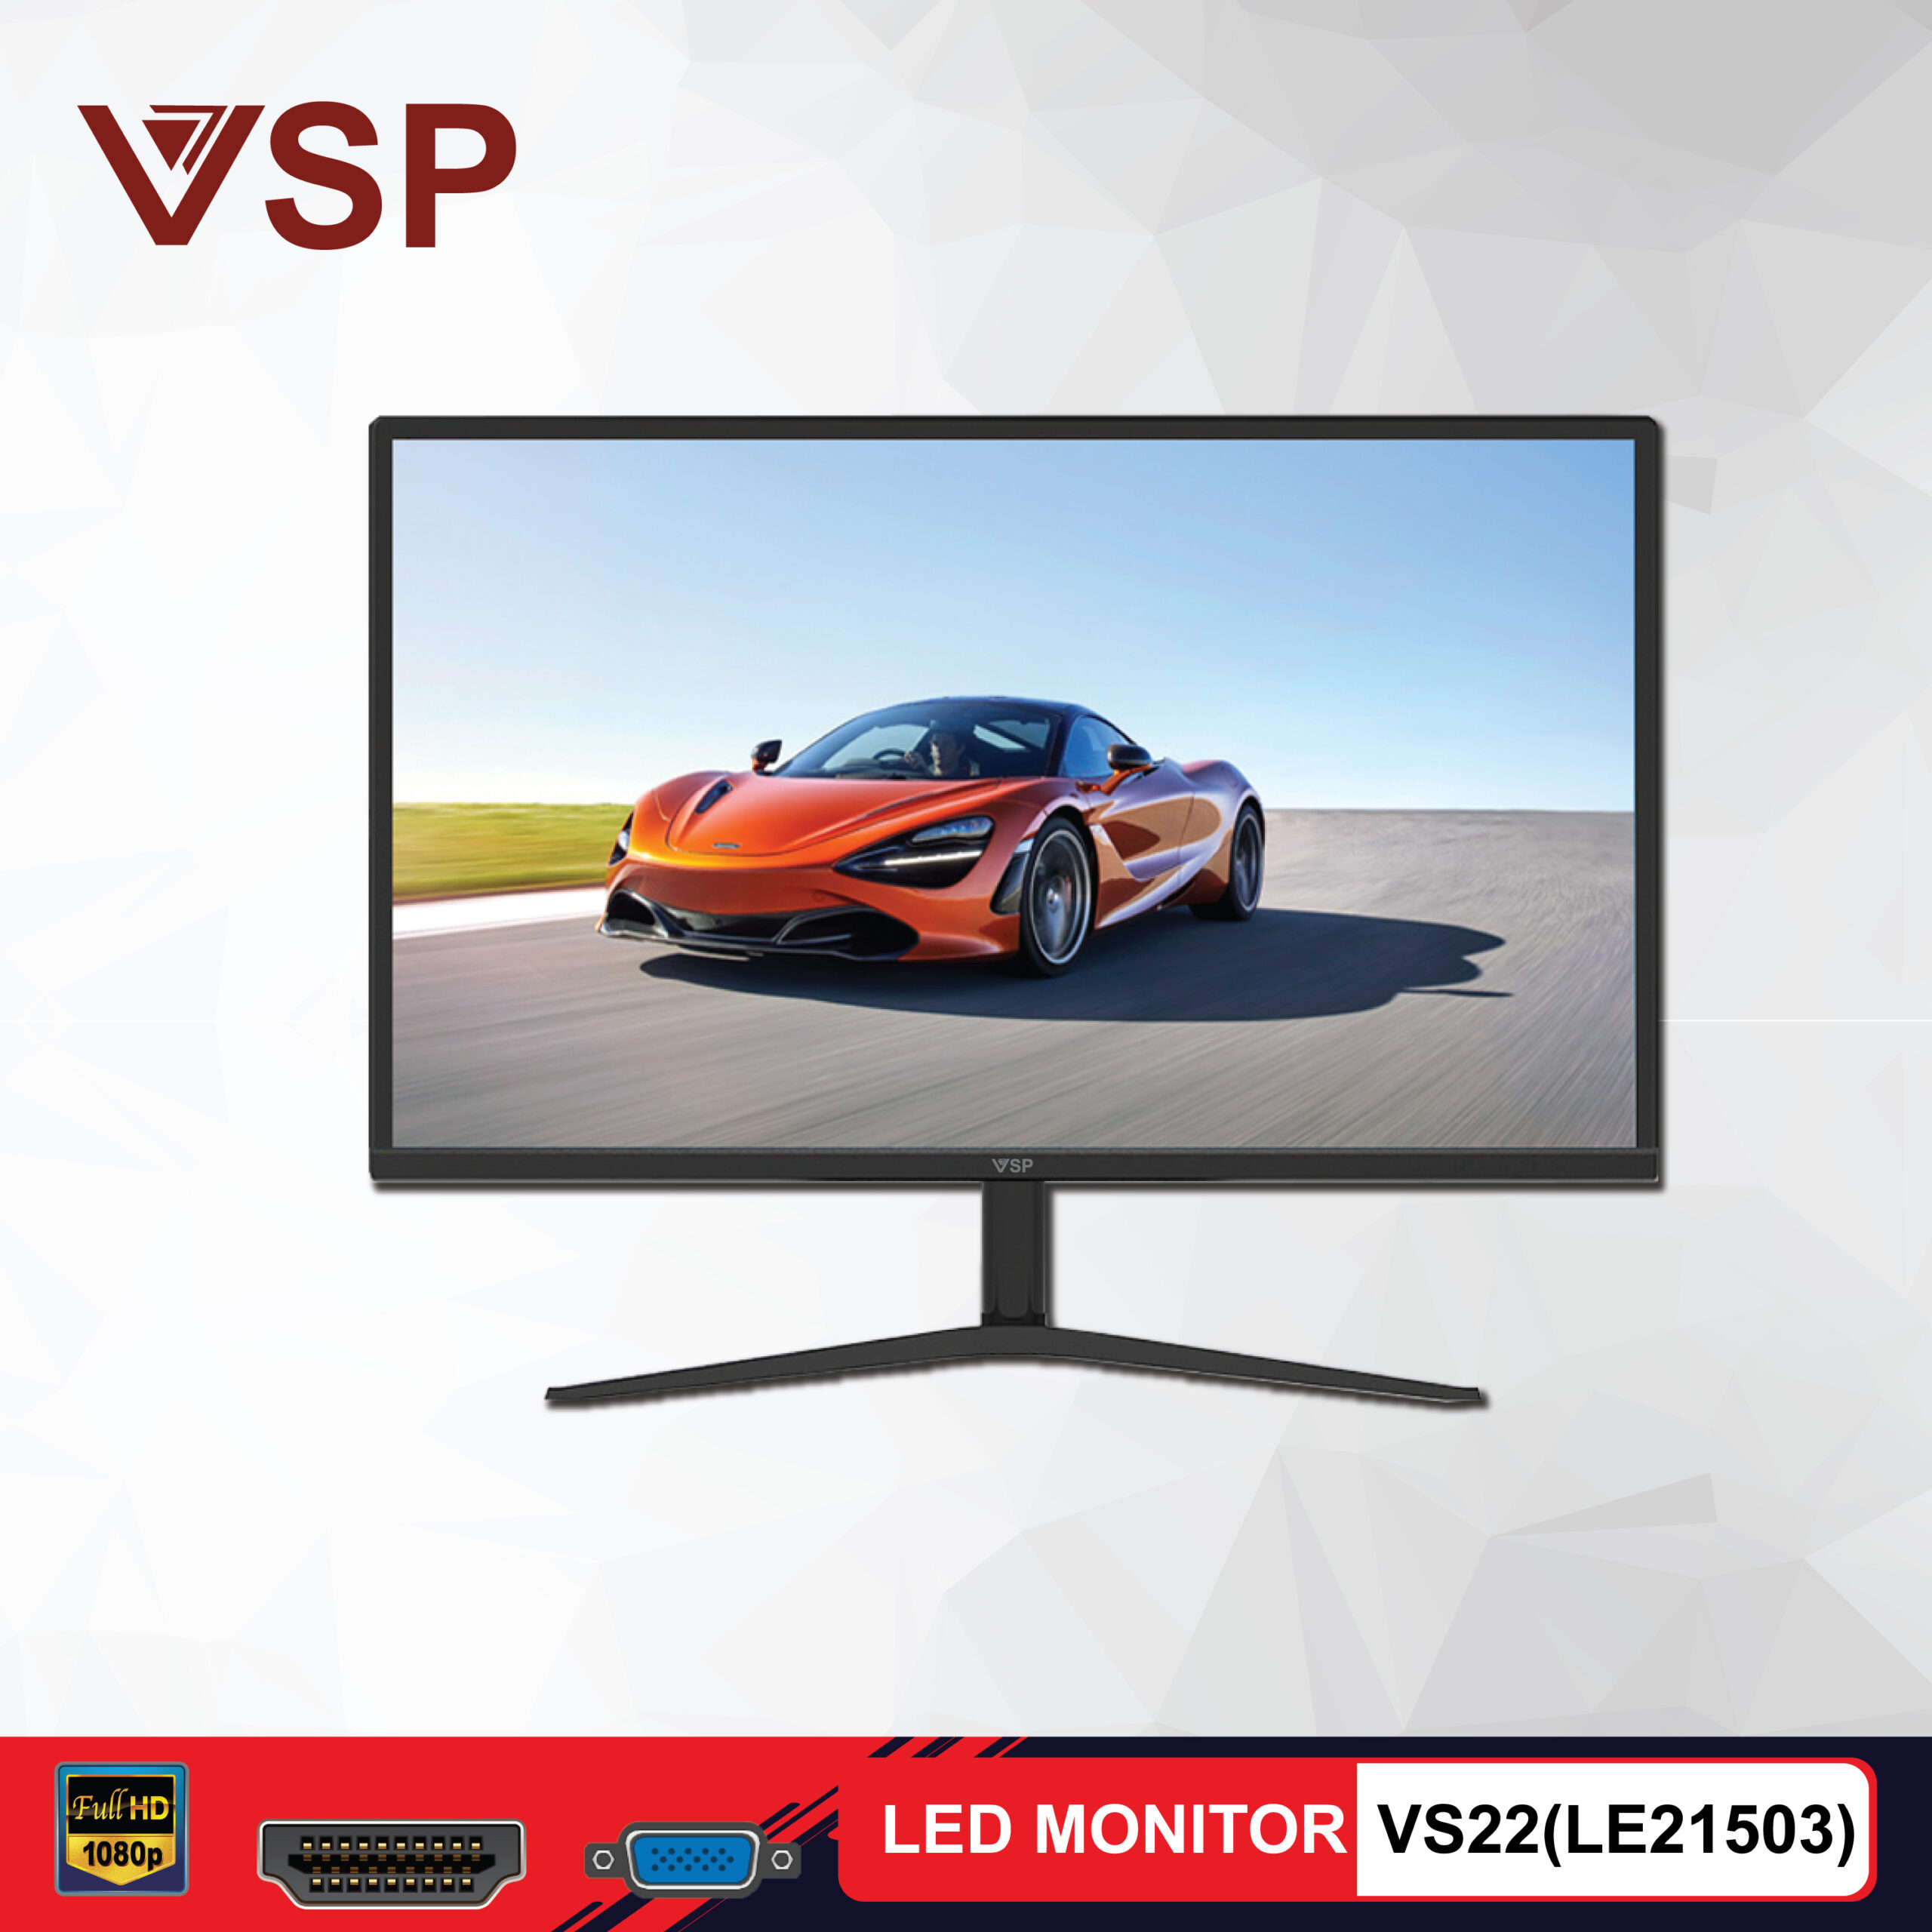 Bán Màn Hình LCD 22 inch VSP TTVSP22LE Chính Hãng Giá Sỉ